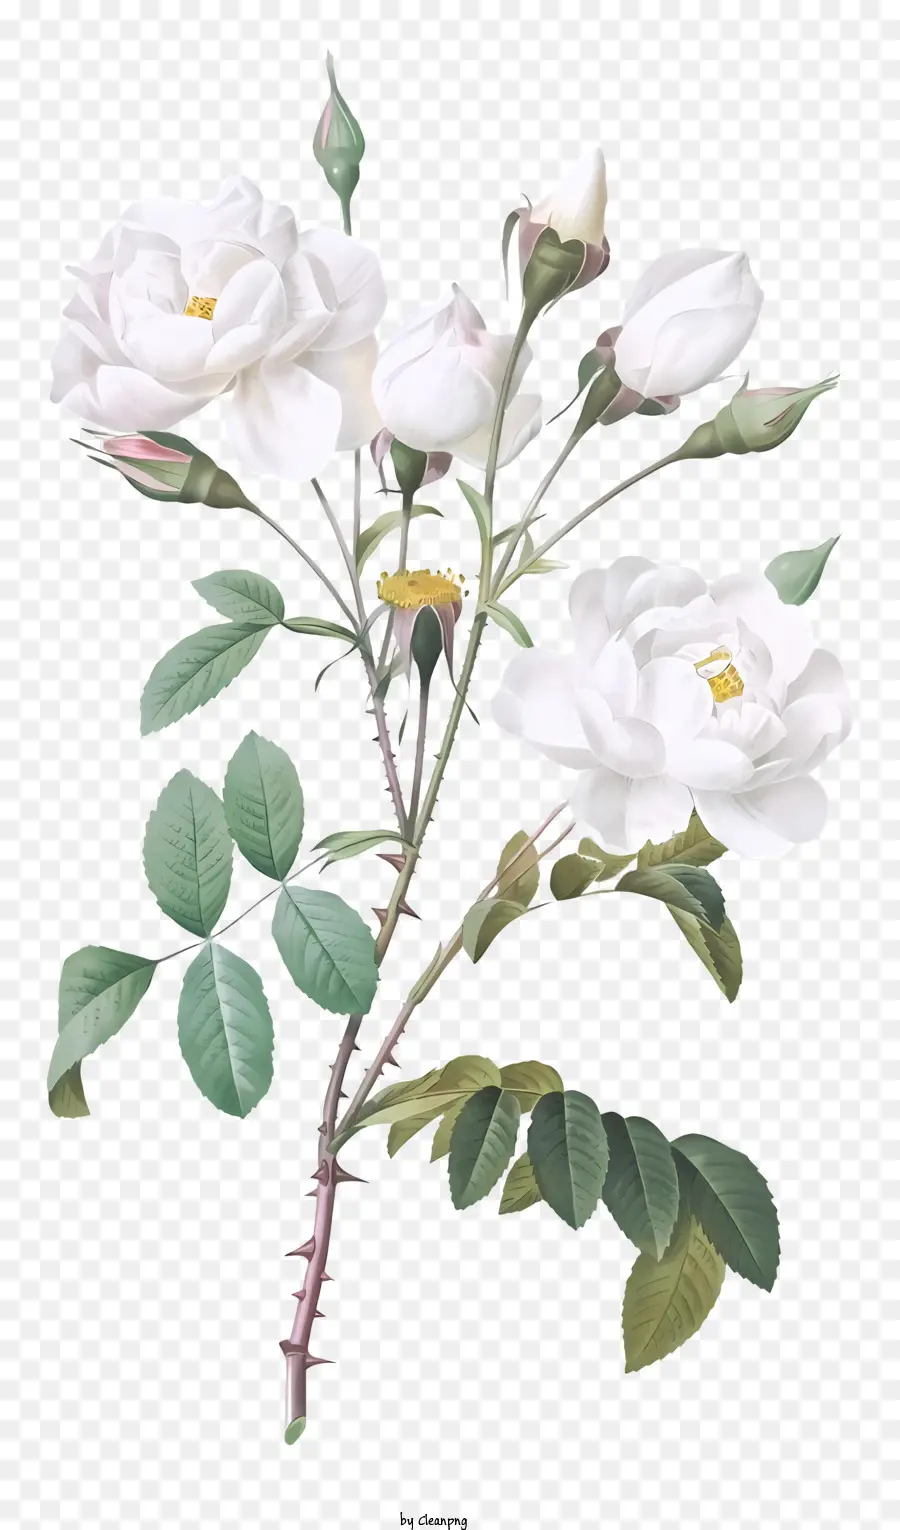 Gesteck - Aquarell Illustration weißer Rosen in der Vase